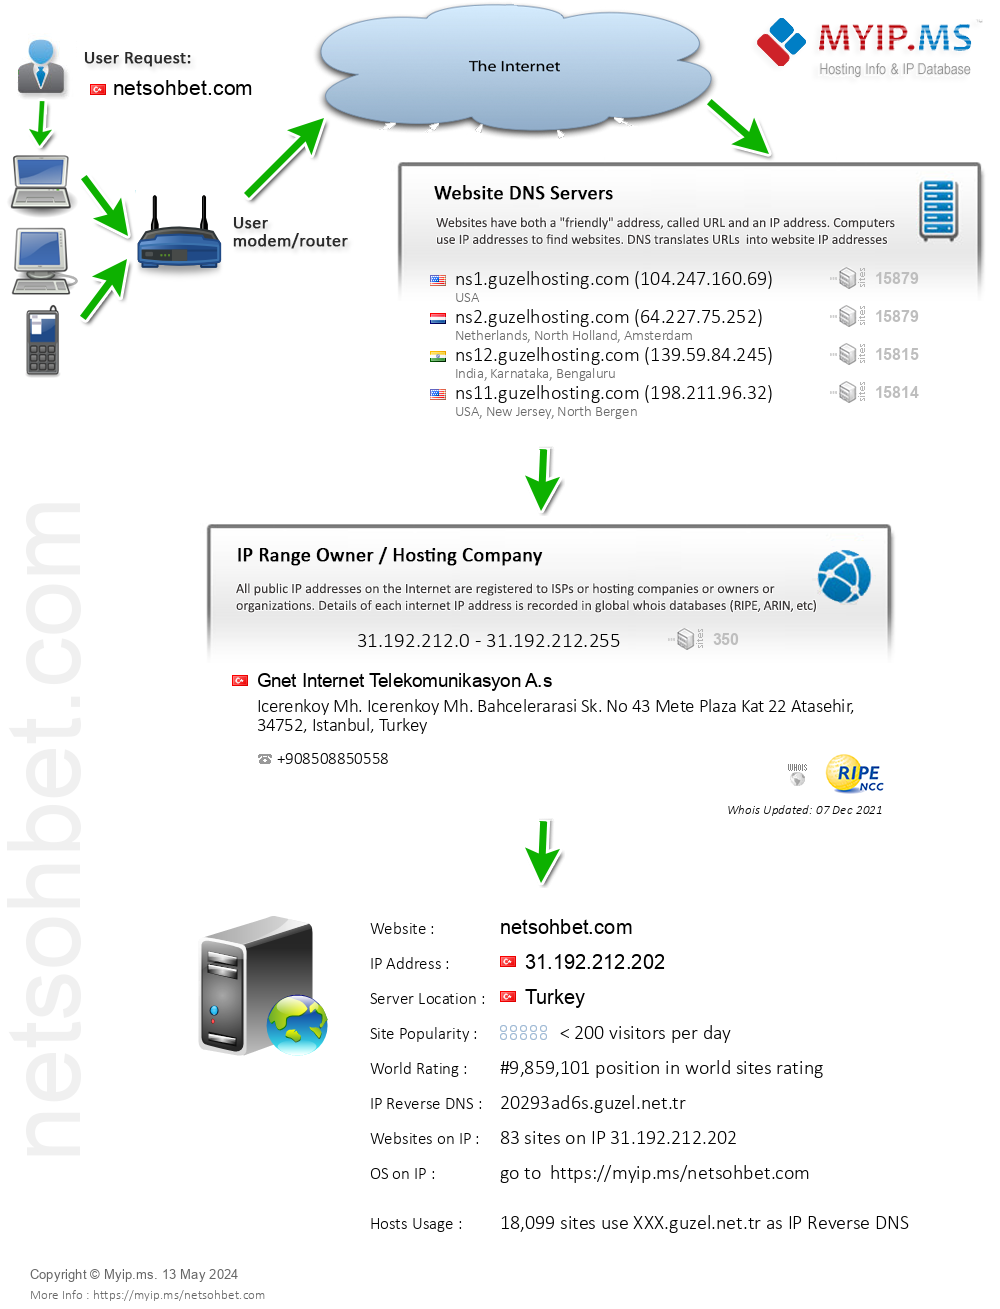 Netsohbet.com - Website Hosting Visual IP Diagram